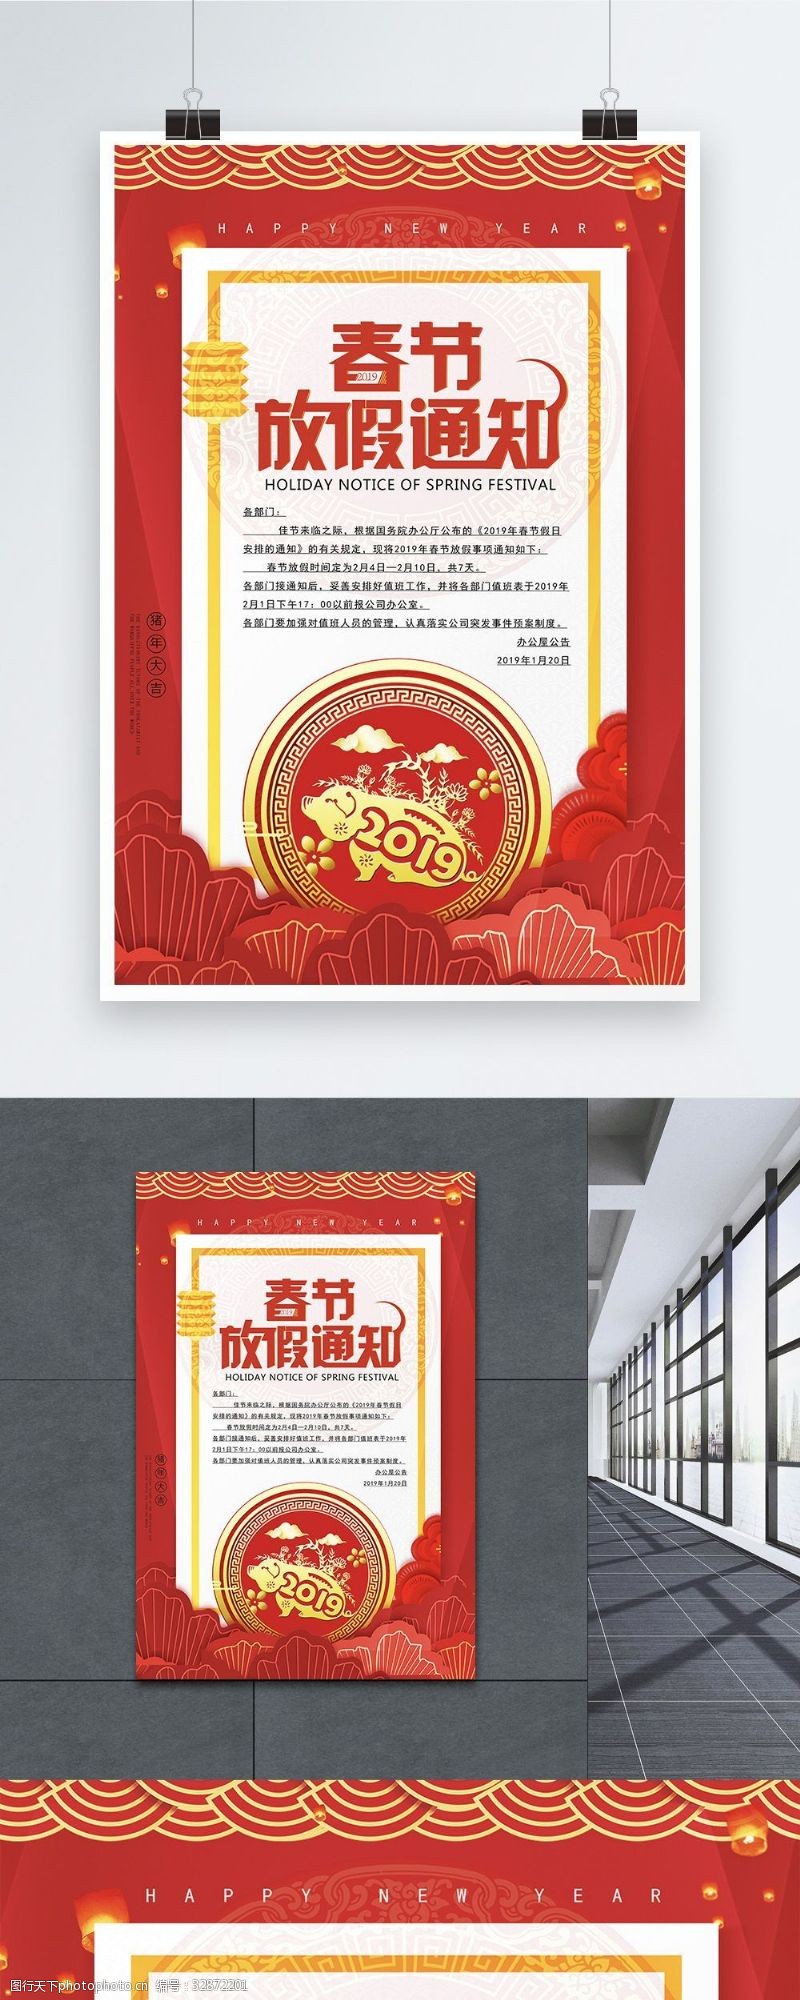 荣耀20192019春节放假通知海报设计